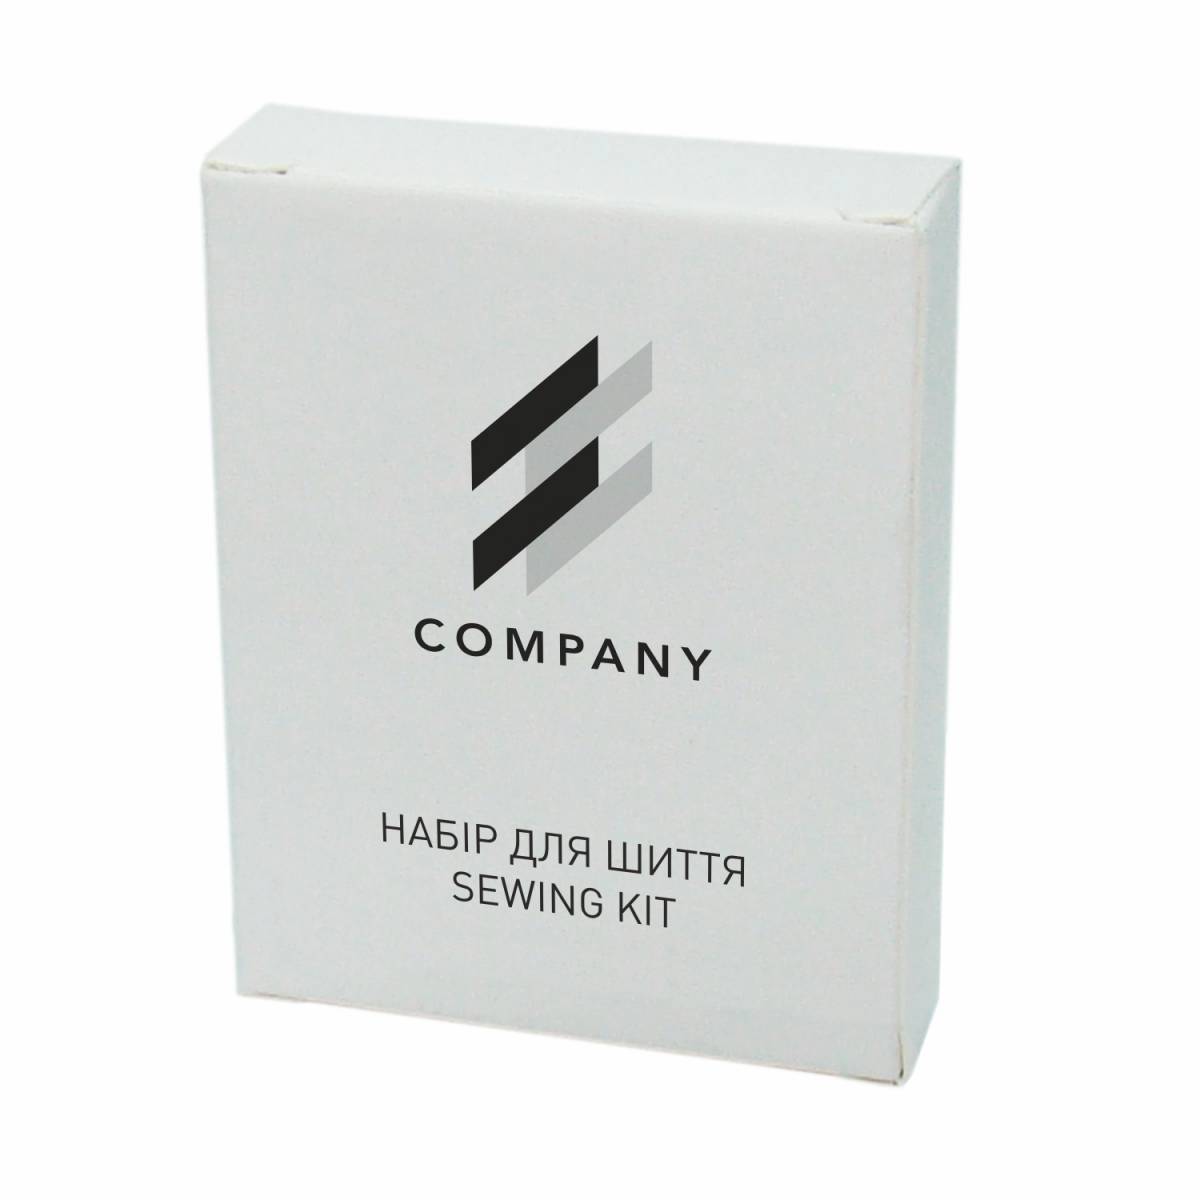 Швейный набор в коробочке из белого картона с логотипом LW2-SK6 HSG